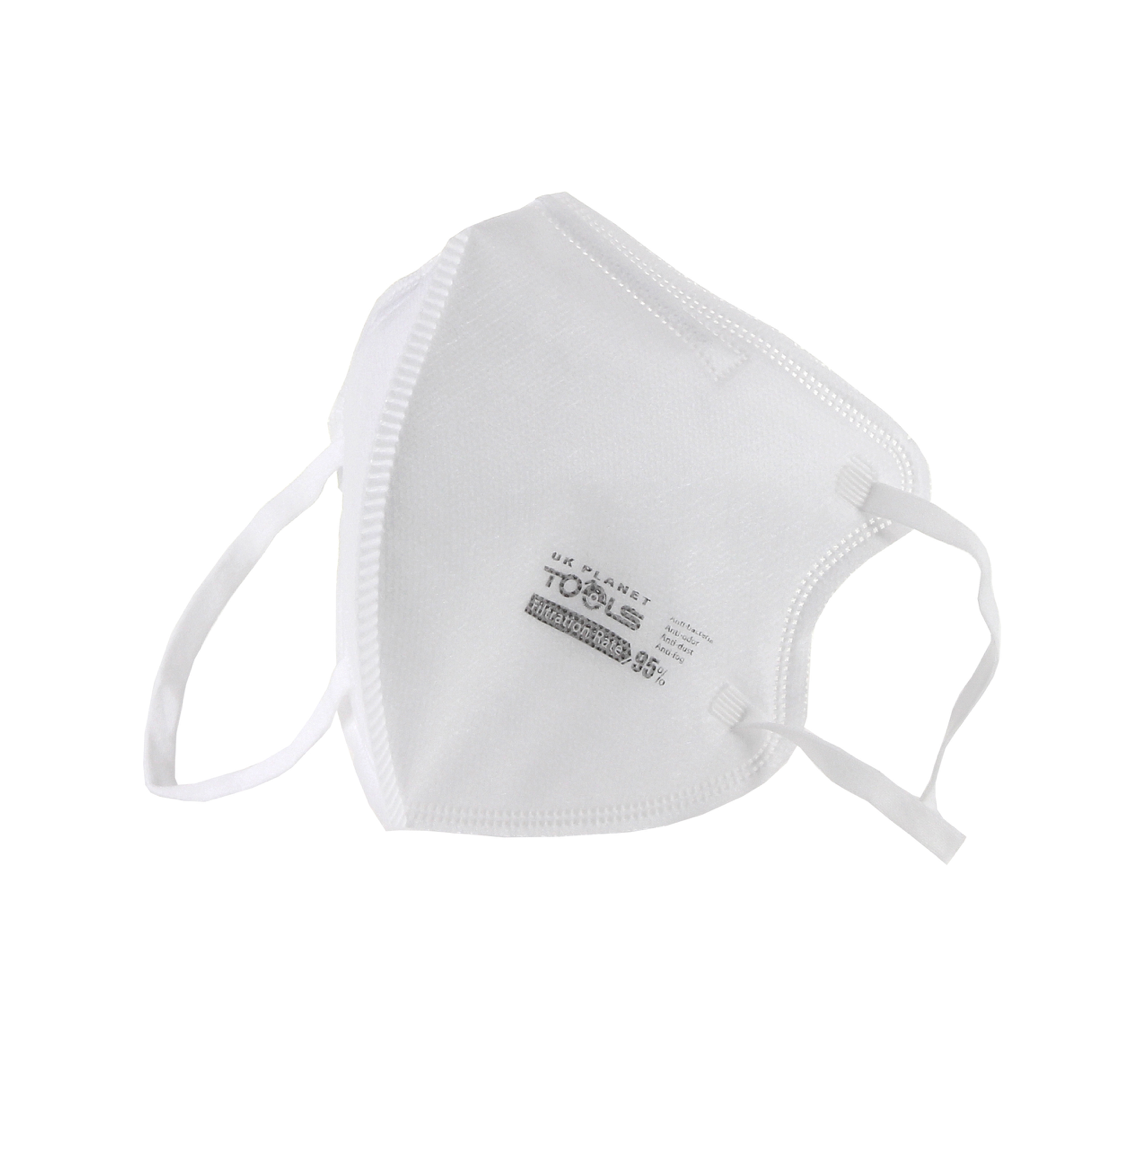 5x KN95 Mundschutz Atemschutz Maske 95% Filterleistung FPP2 vergleichbar